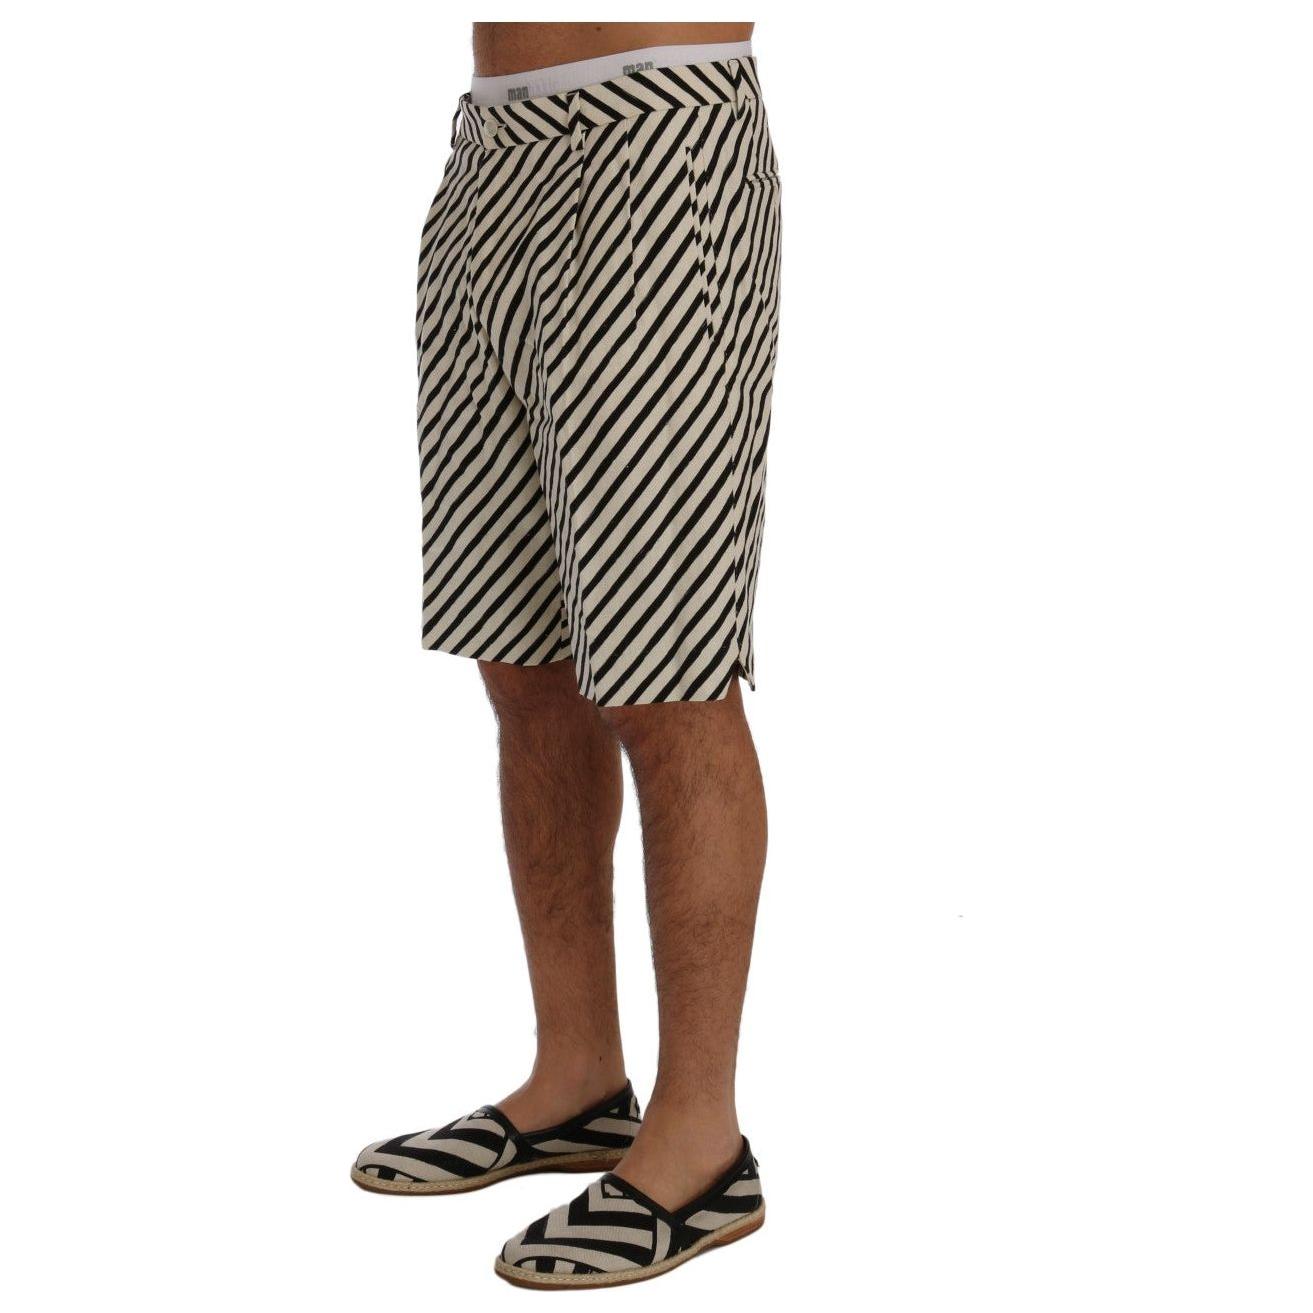 Dolce & Gabbana Striped Hemp Casual Shorts white-black-striped-hemp-casual-shorts 443695-white-black-striped-hemp-casual-shorts-1.jpg